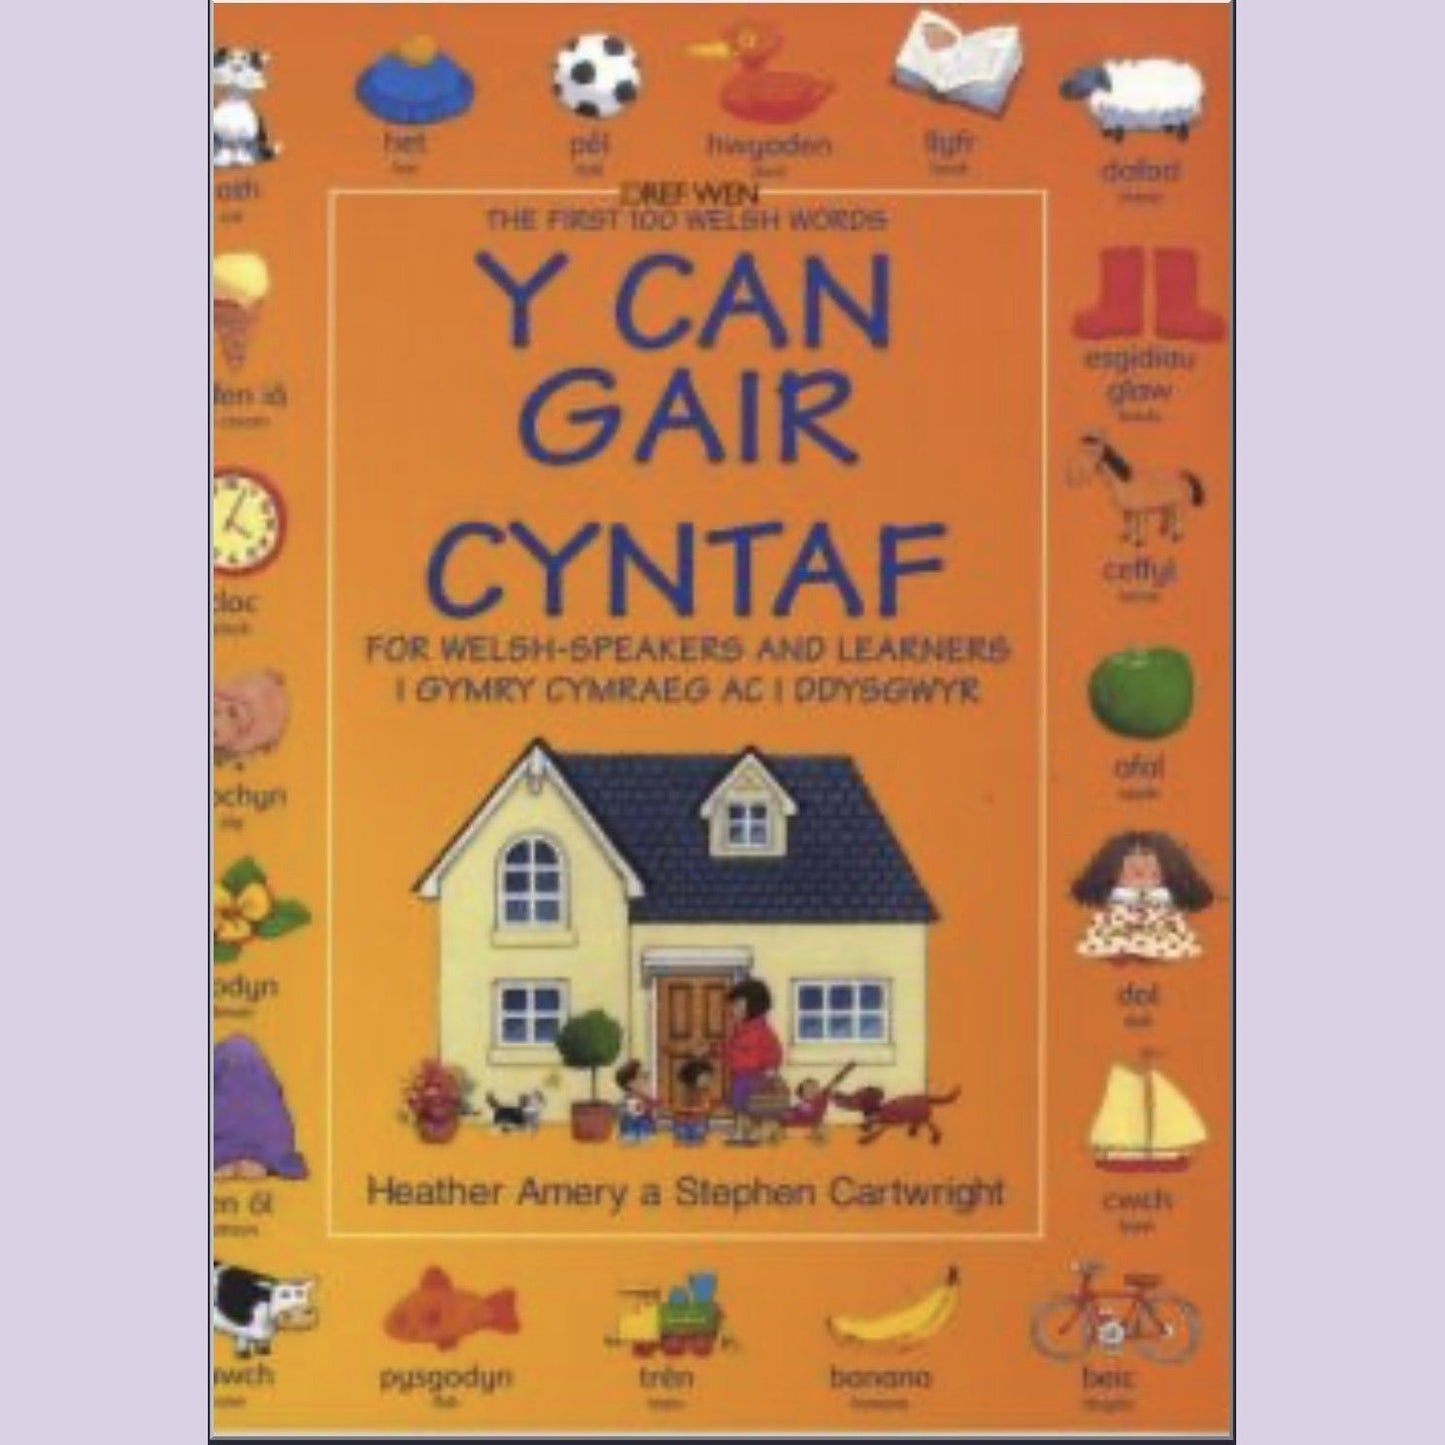 Y Can Gair Cyntaf i Gymry Cymraeg ac i Ddysgwyr / The First 100 Welsh Words for Welsh-Speakers and Learners - Siop y Pethe